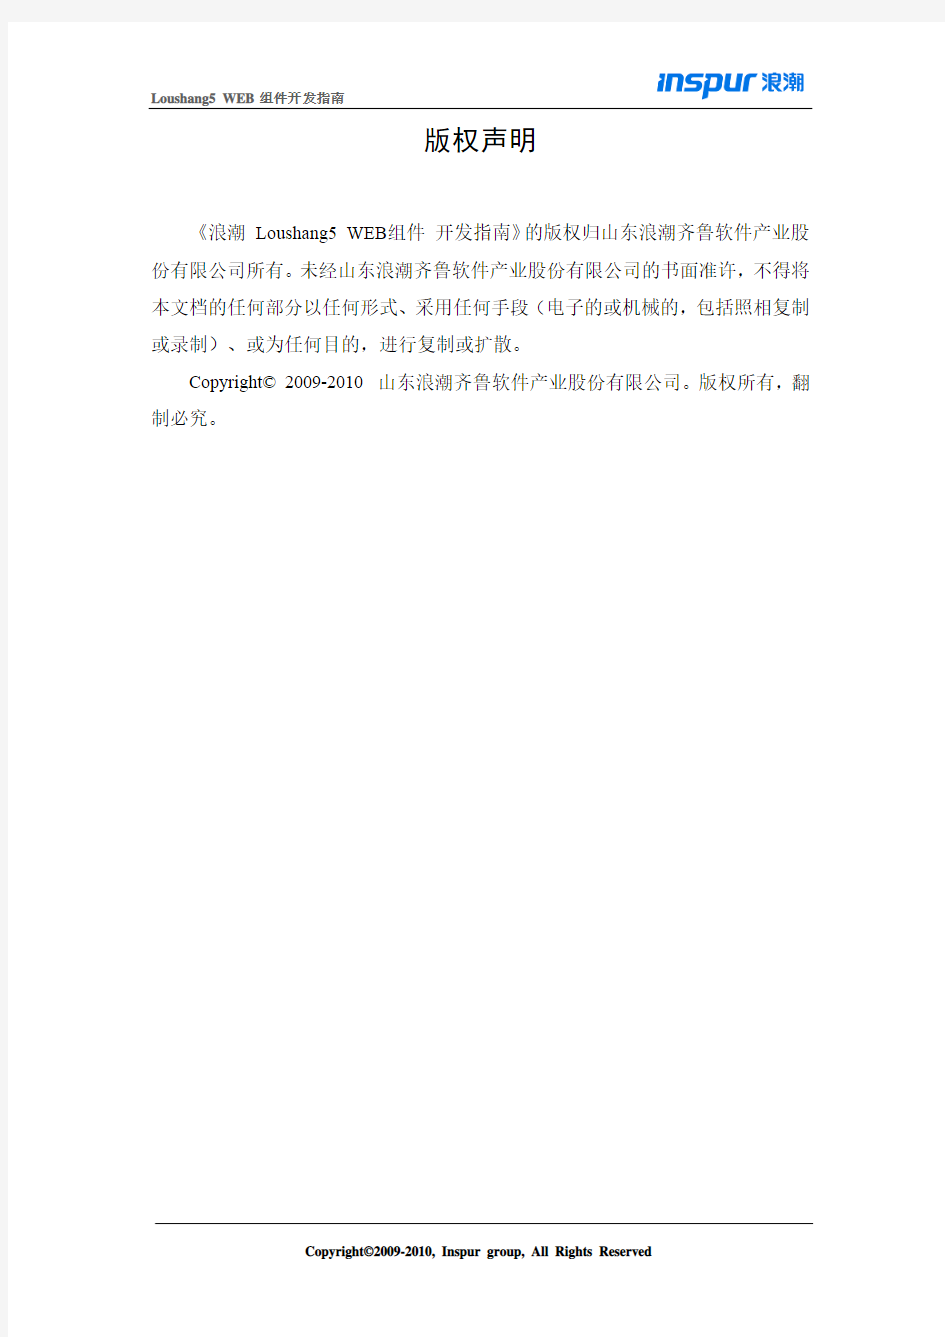 浪潮 Loushang5 WEB组件 开发指南